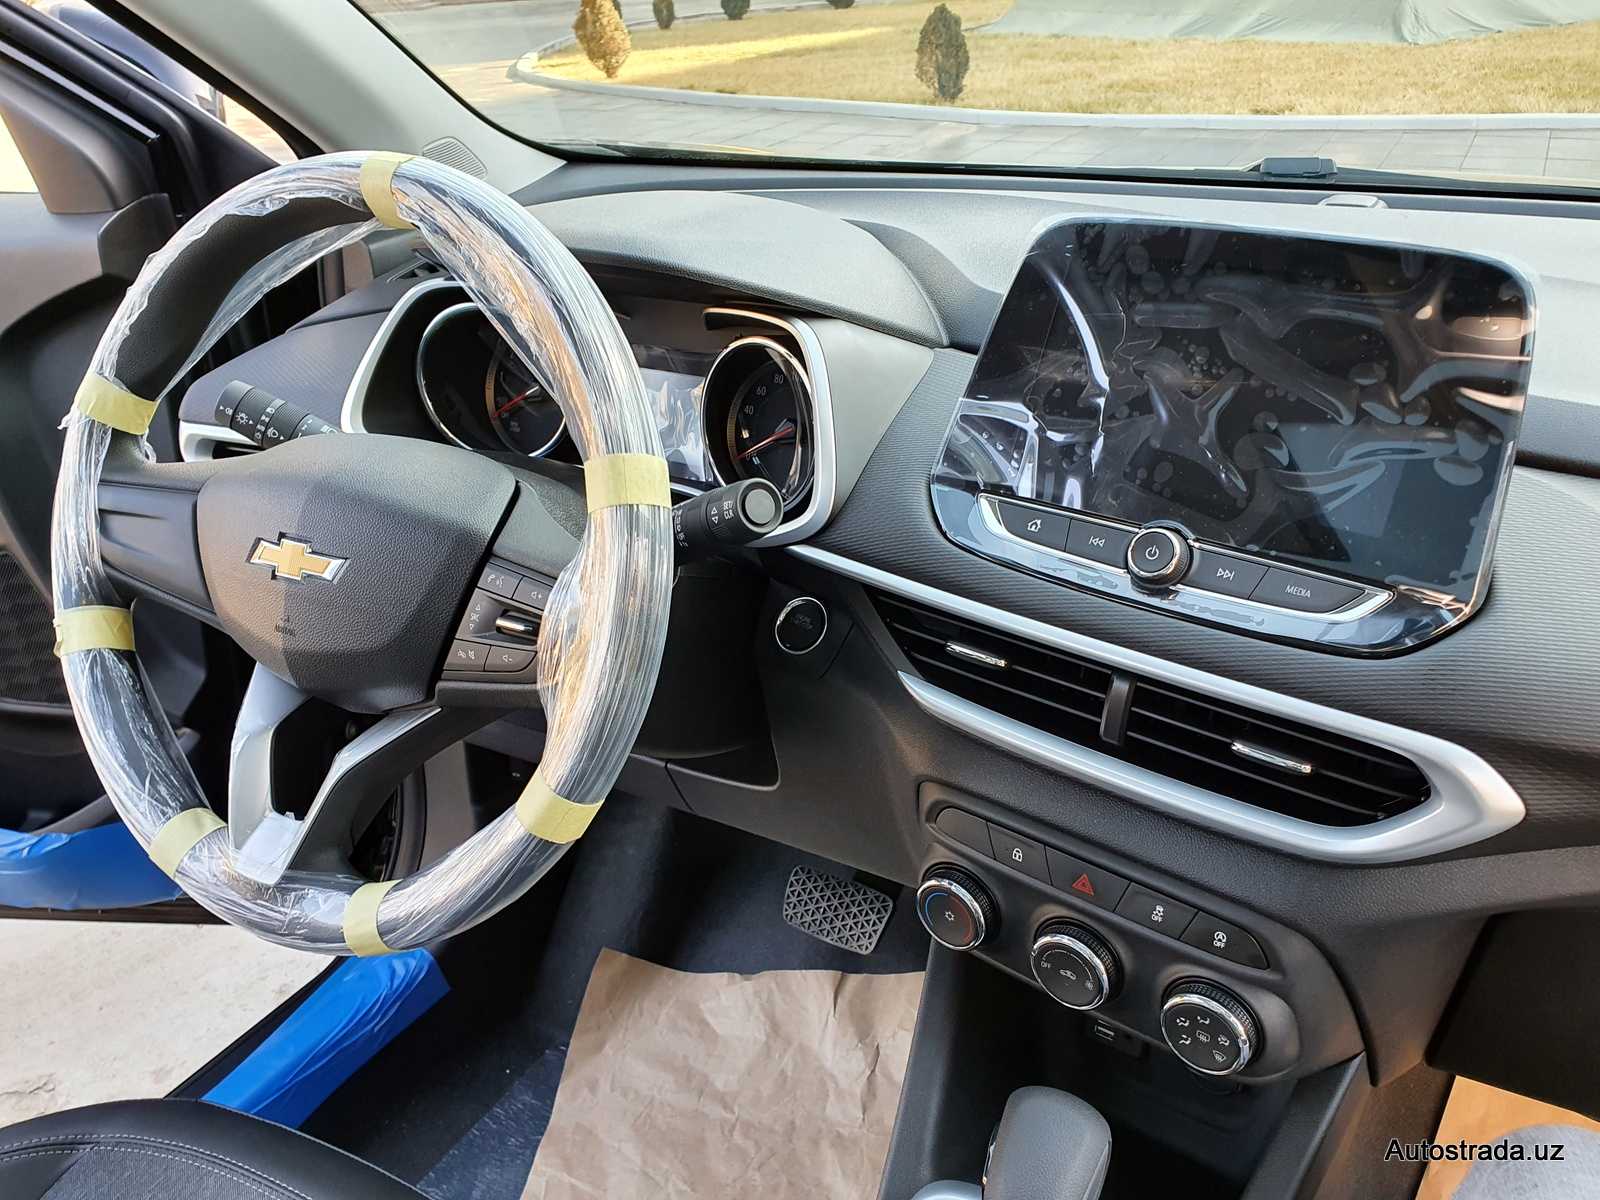 Chevrolet tracker (шевроле траккер) 2022 - обзор модели c фото и видео